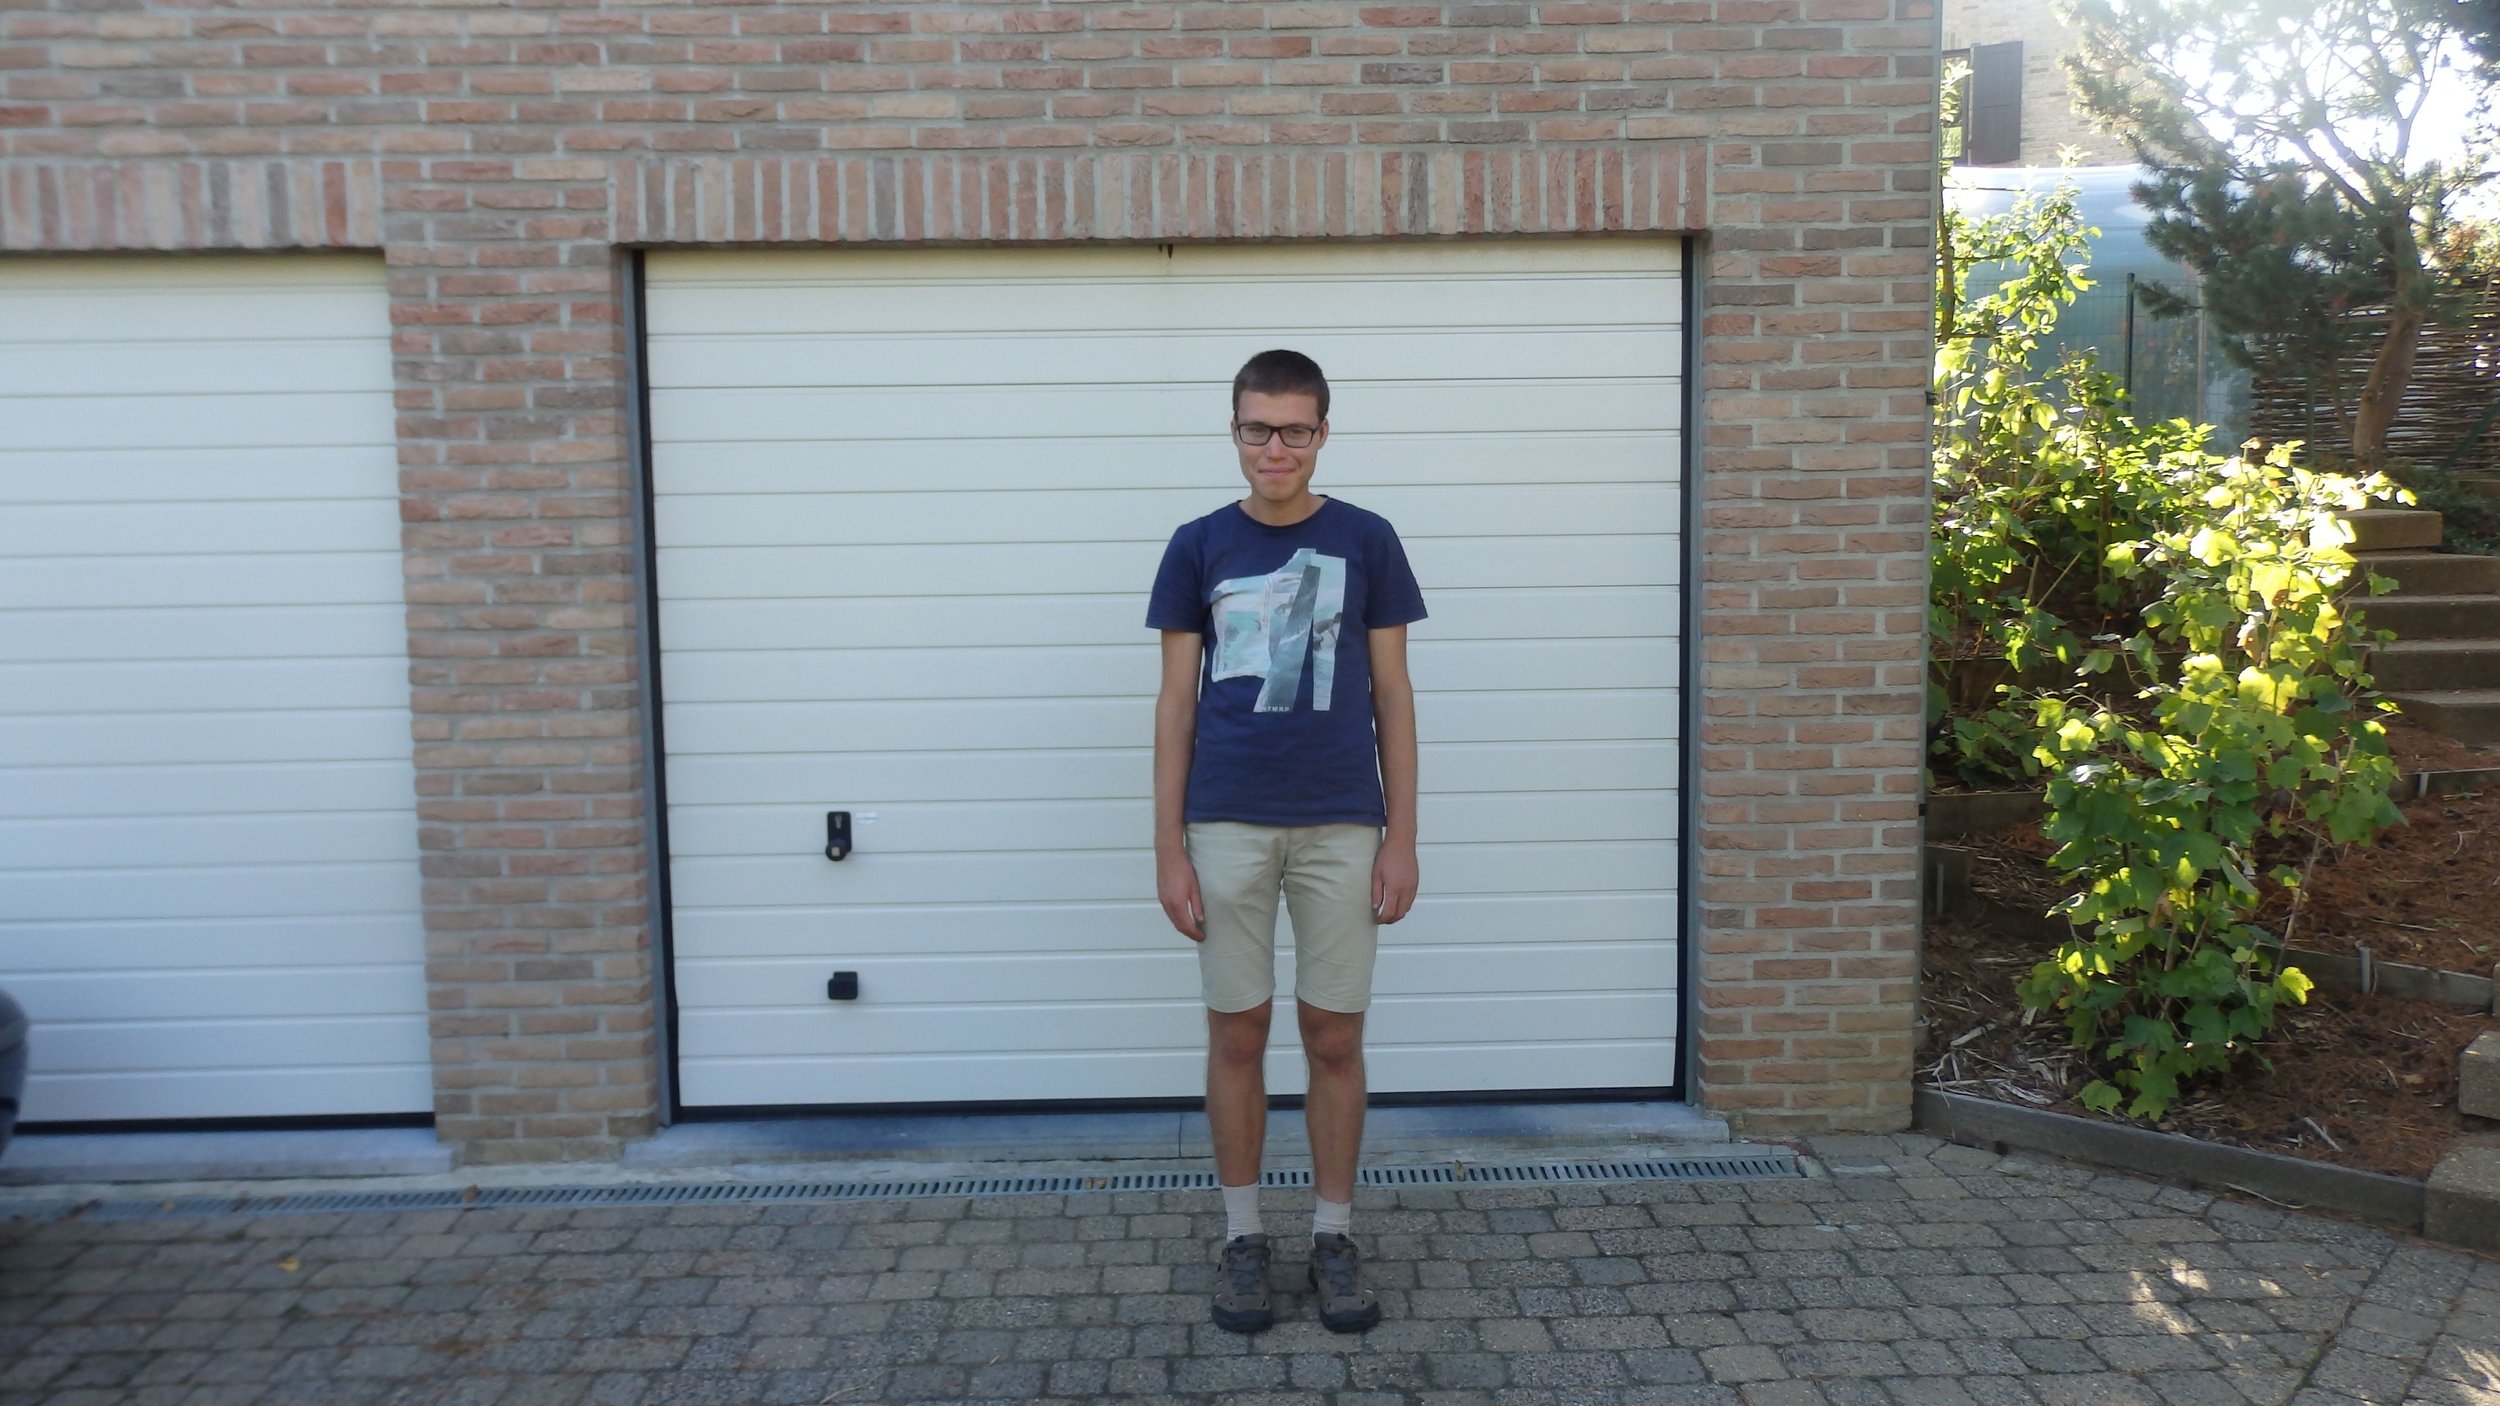   Pieter wil graag de trein nemen   Pieter is een jongeman van 24 uit Leuven. Hij heeft autisme, maar wil volop zelfstandig zijn en overal naartoe met de trein. Hij heeft hierbij enkel wat begeleiding nodig.   Ik ga samen met Pieter op stap!  